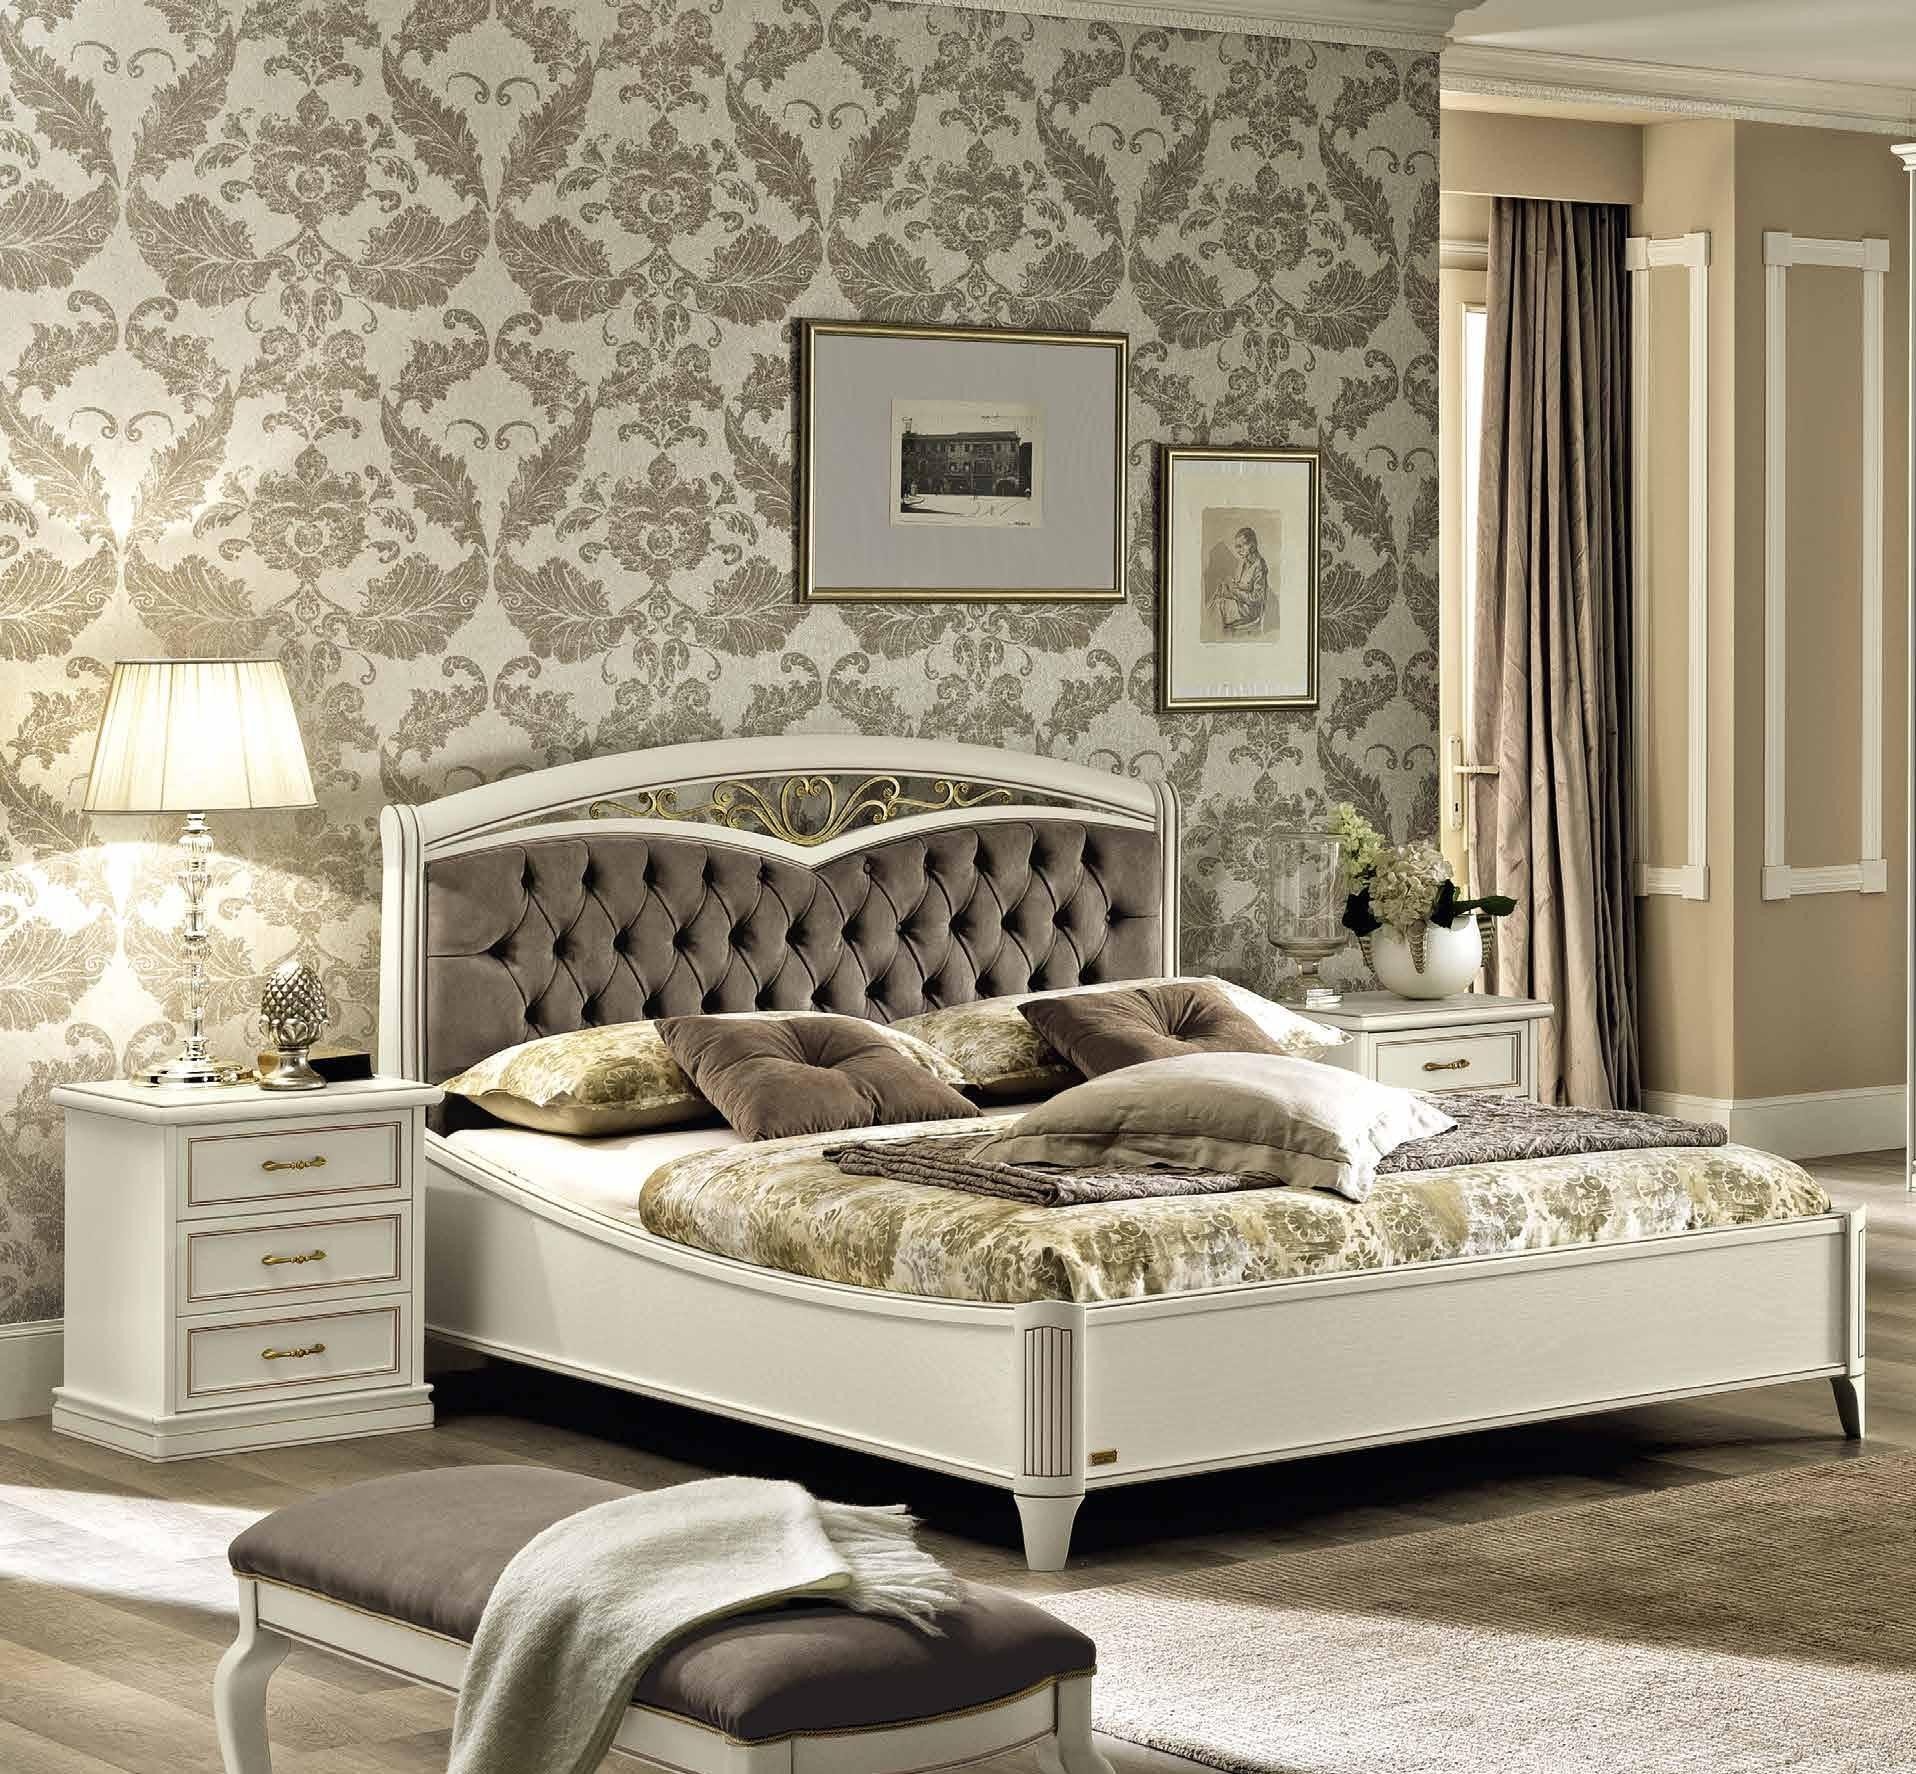 Кровать Nostalgia Bianco Antico, двуспальная, с мягким изголовьем Capitone, без изножья, цвет: белый антик, эко кожа Nabuk 4267, 180x200 см (085LET.44BA52)085LET.44BA52